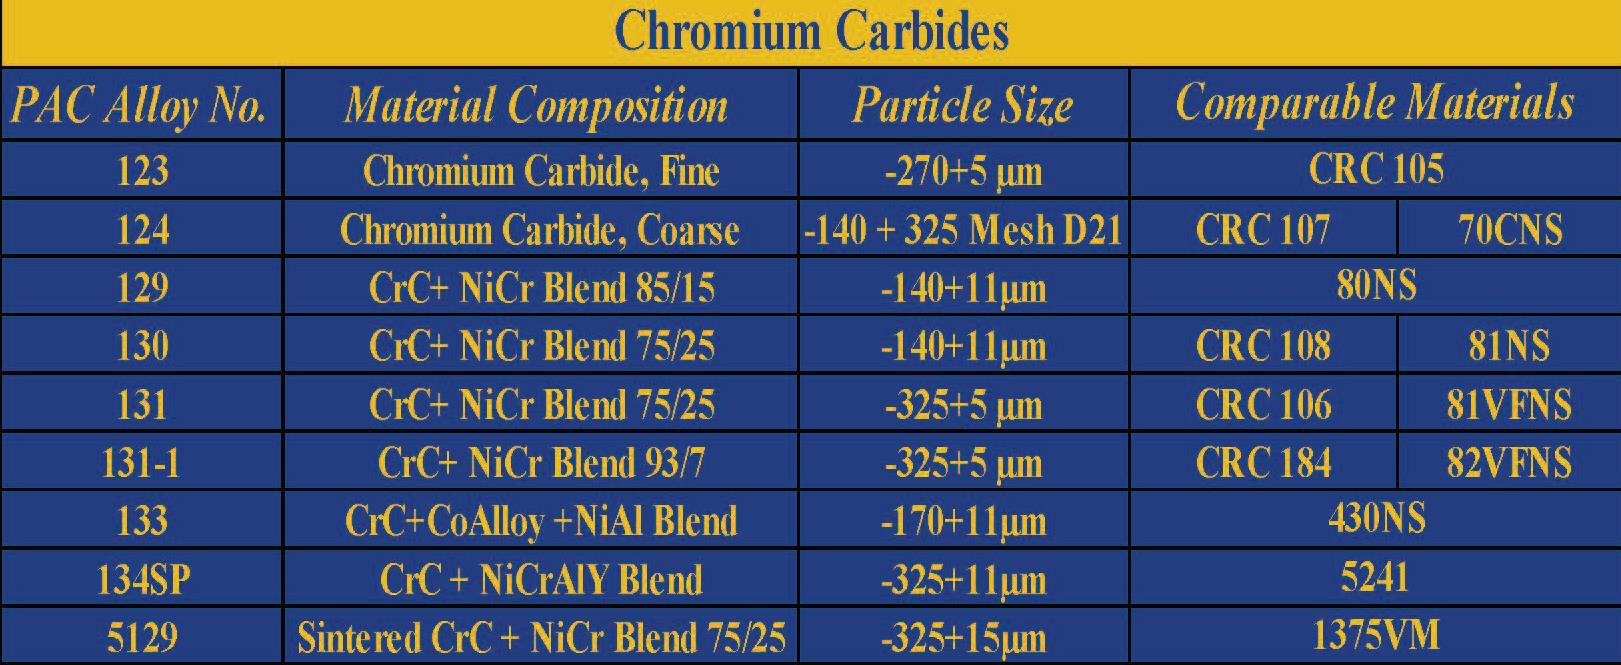 Chromium Carbides